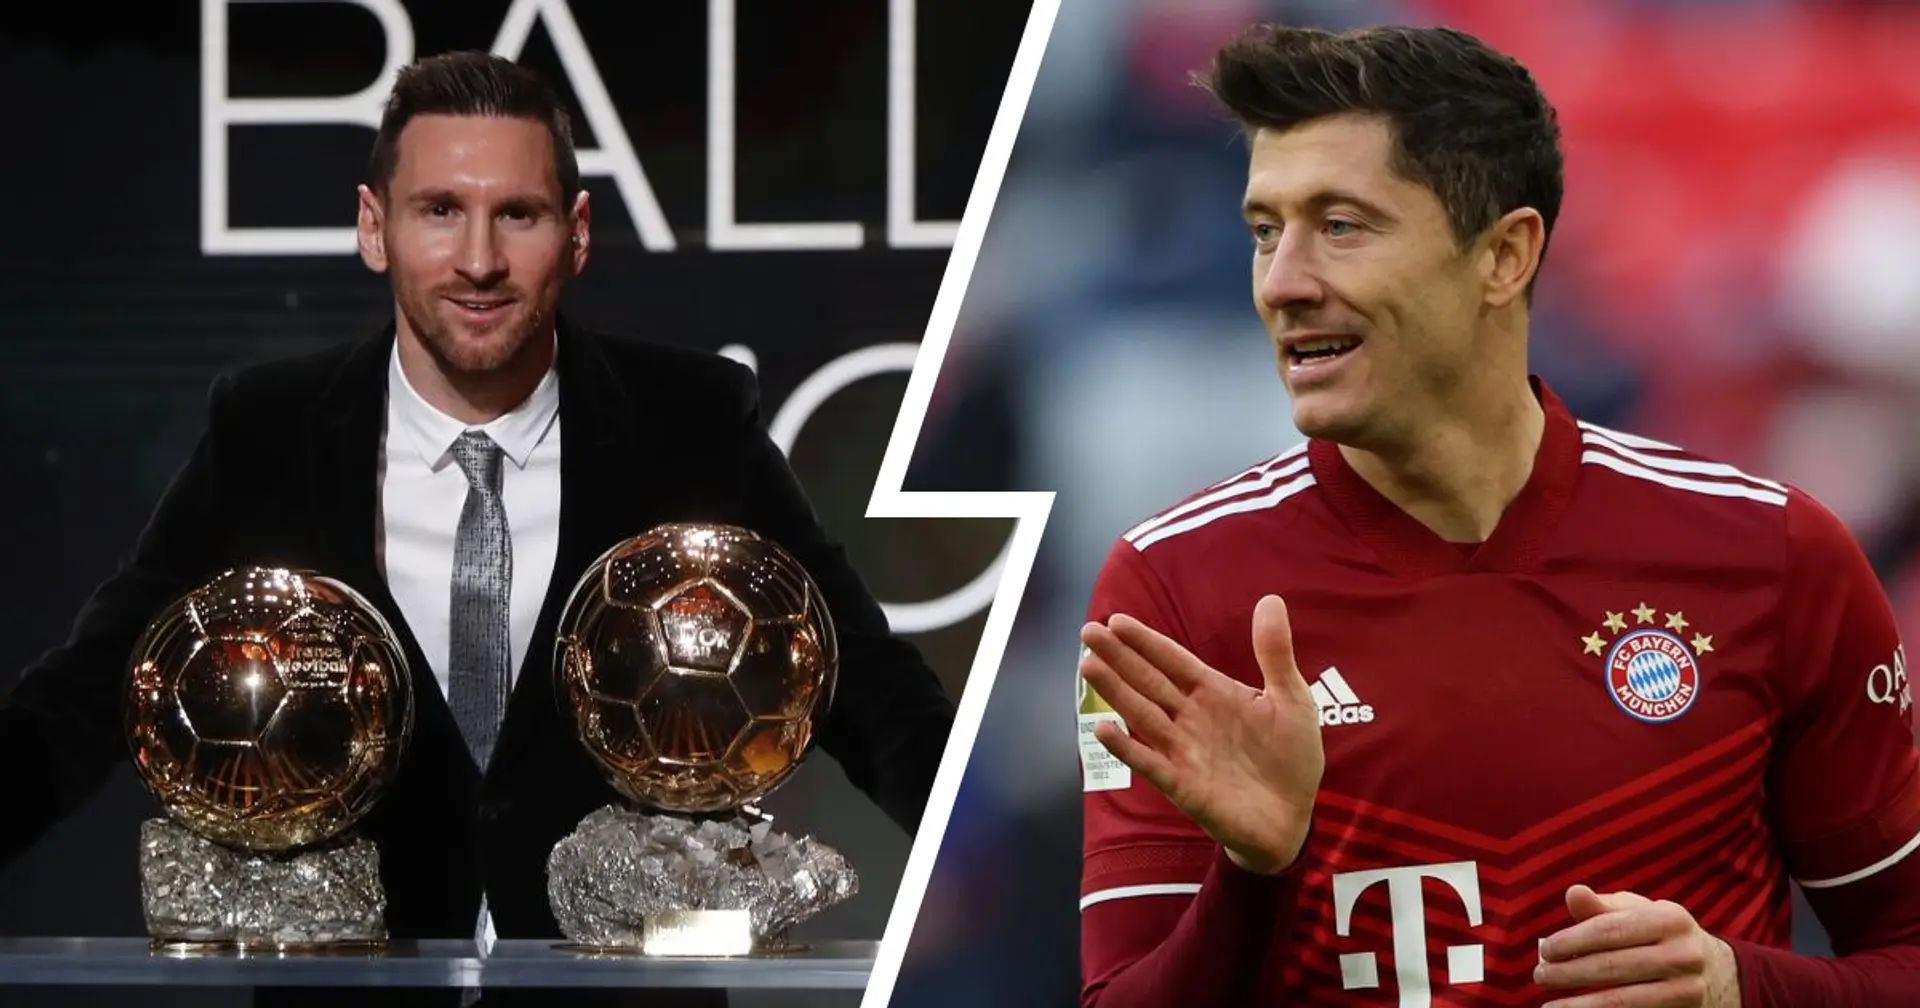 Ballon-d'Or-Rangliste: Lewandowski ist der Favorit, Messi auf dem 20. Platz